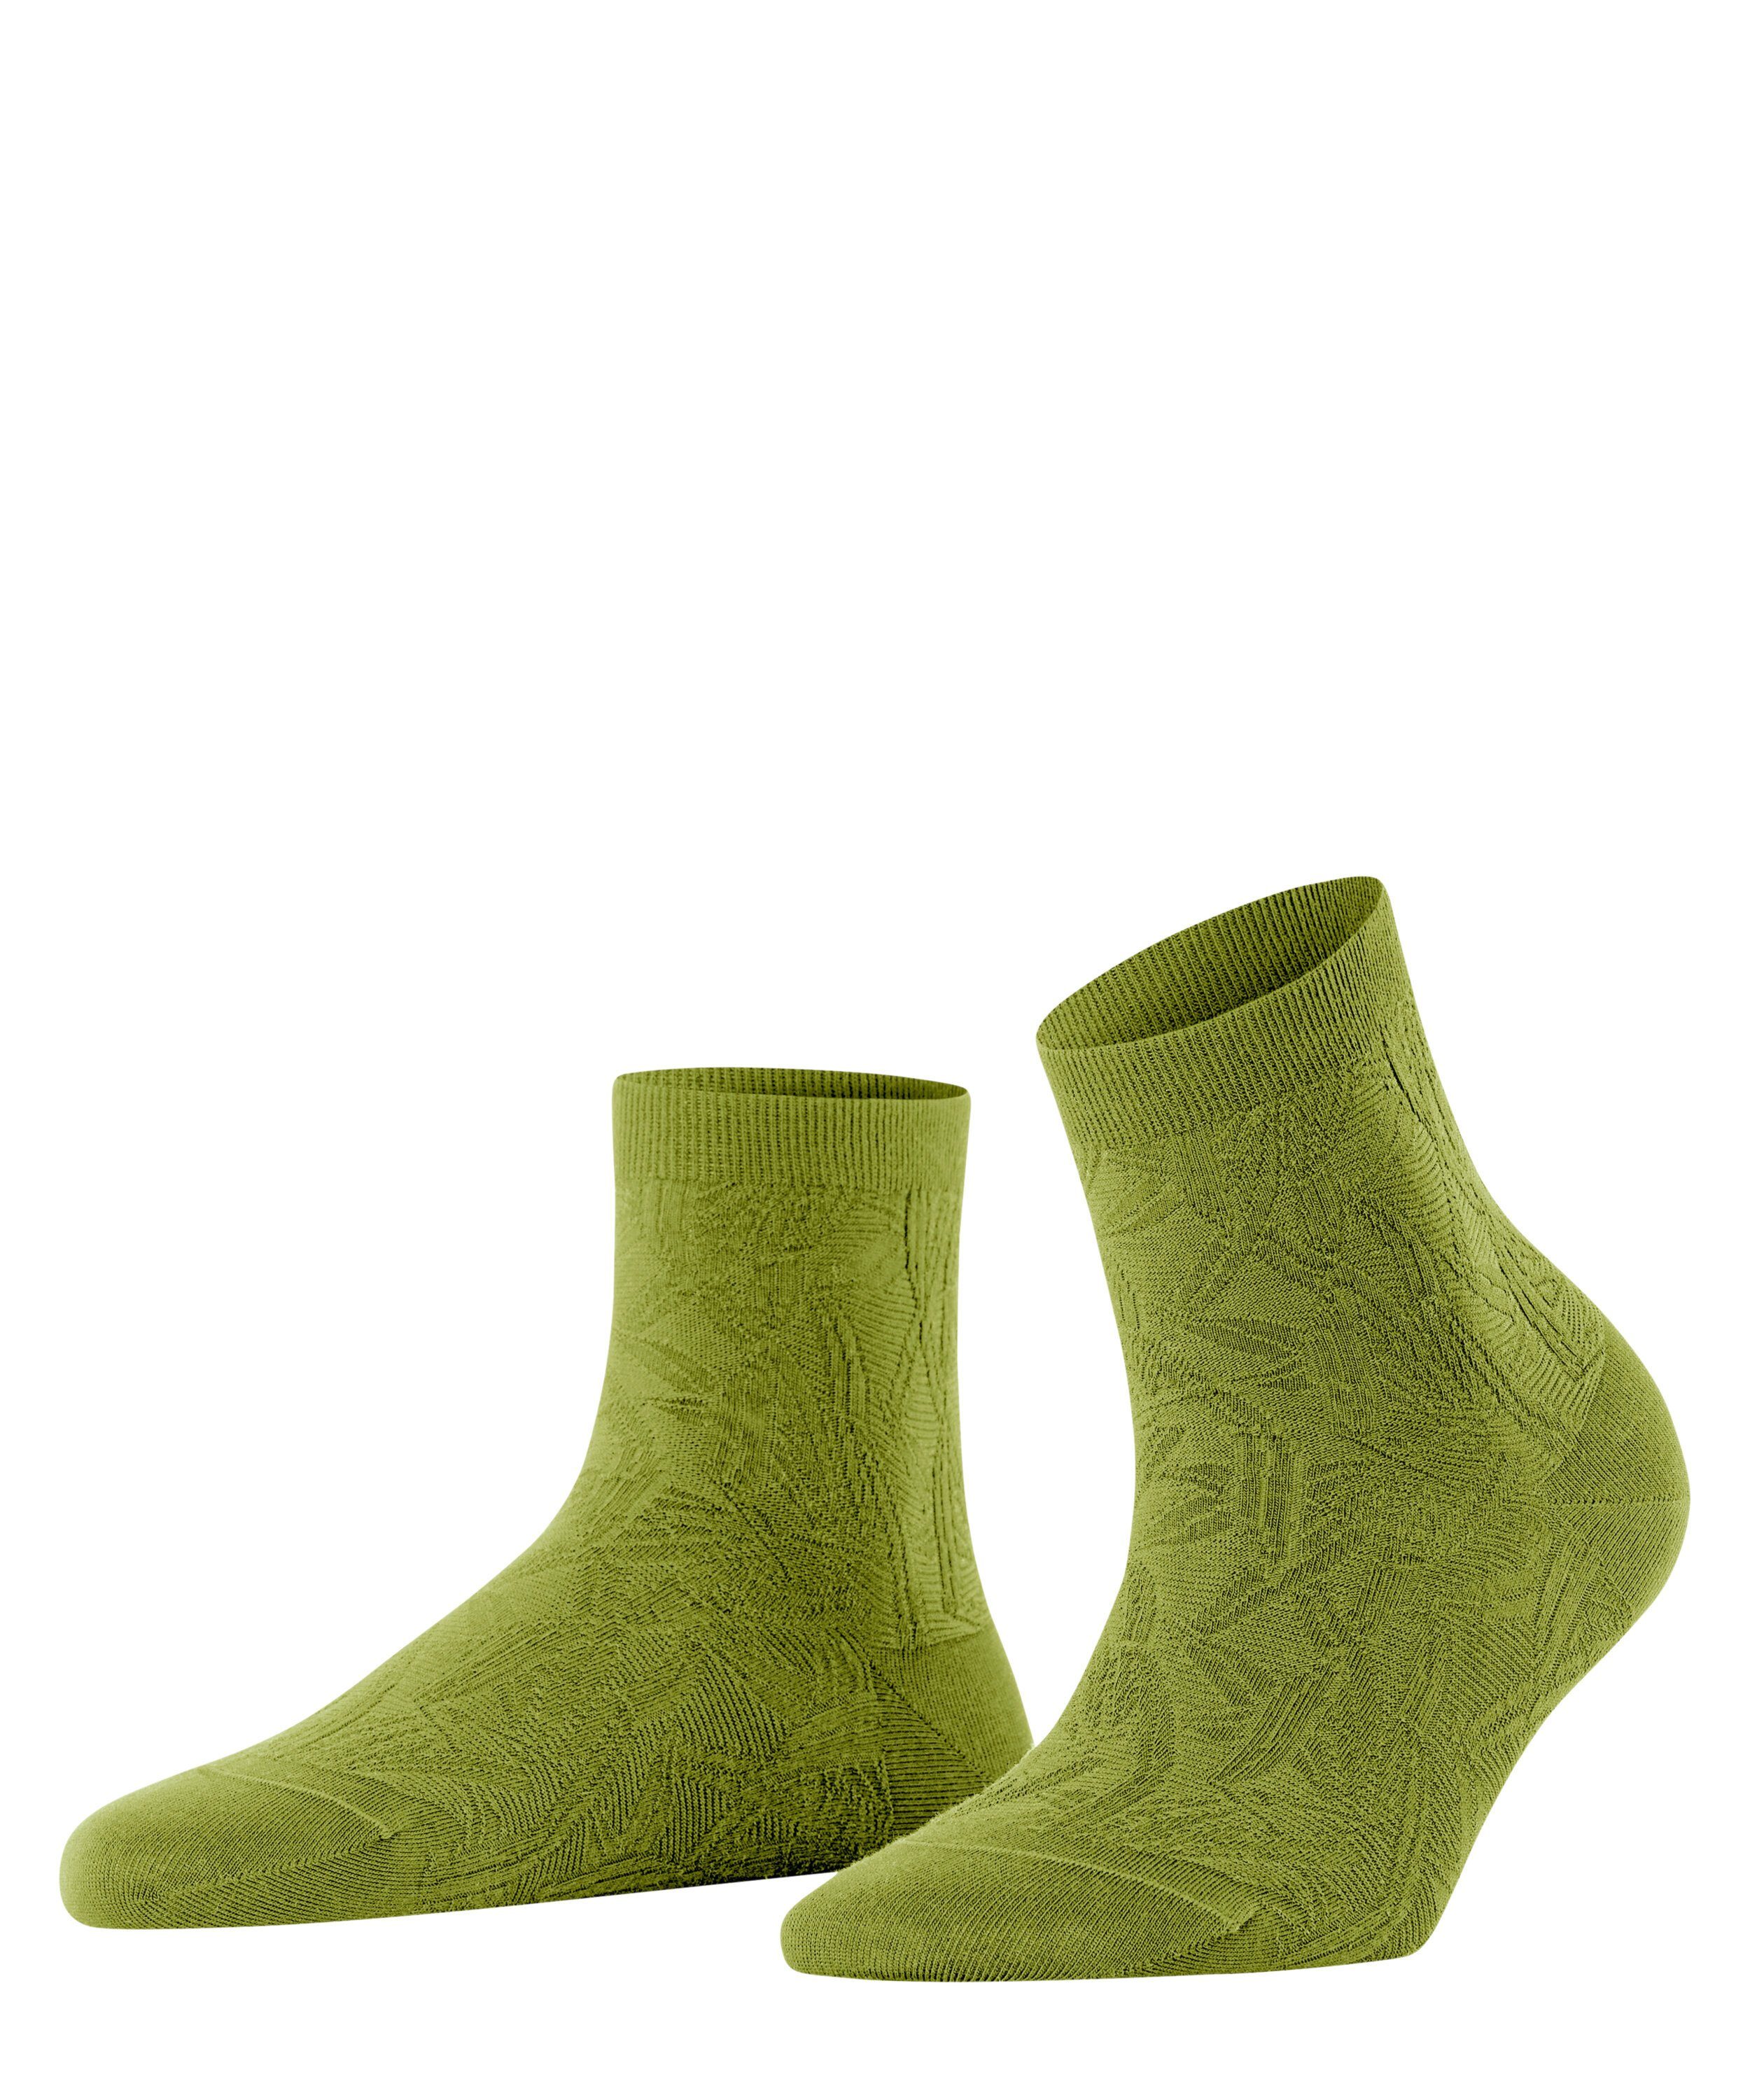 Wäsche/Bademode Socken FALKE Socken Fresh Herbs (1-Paar) mit nachhaltigem Garn